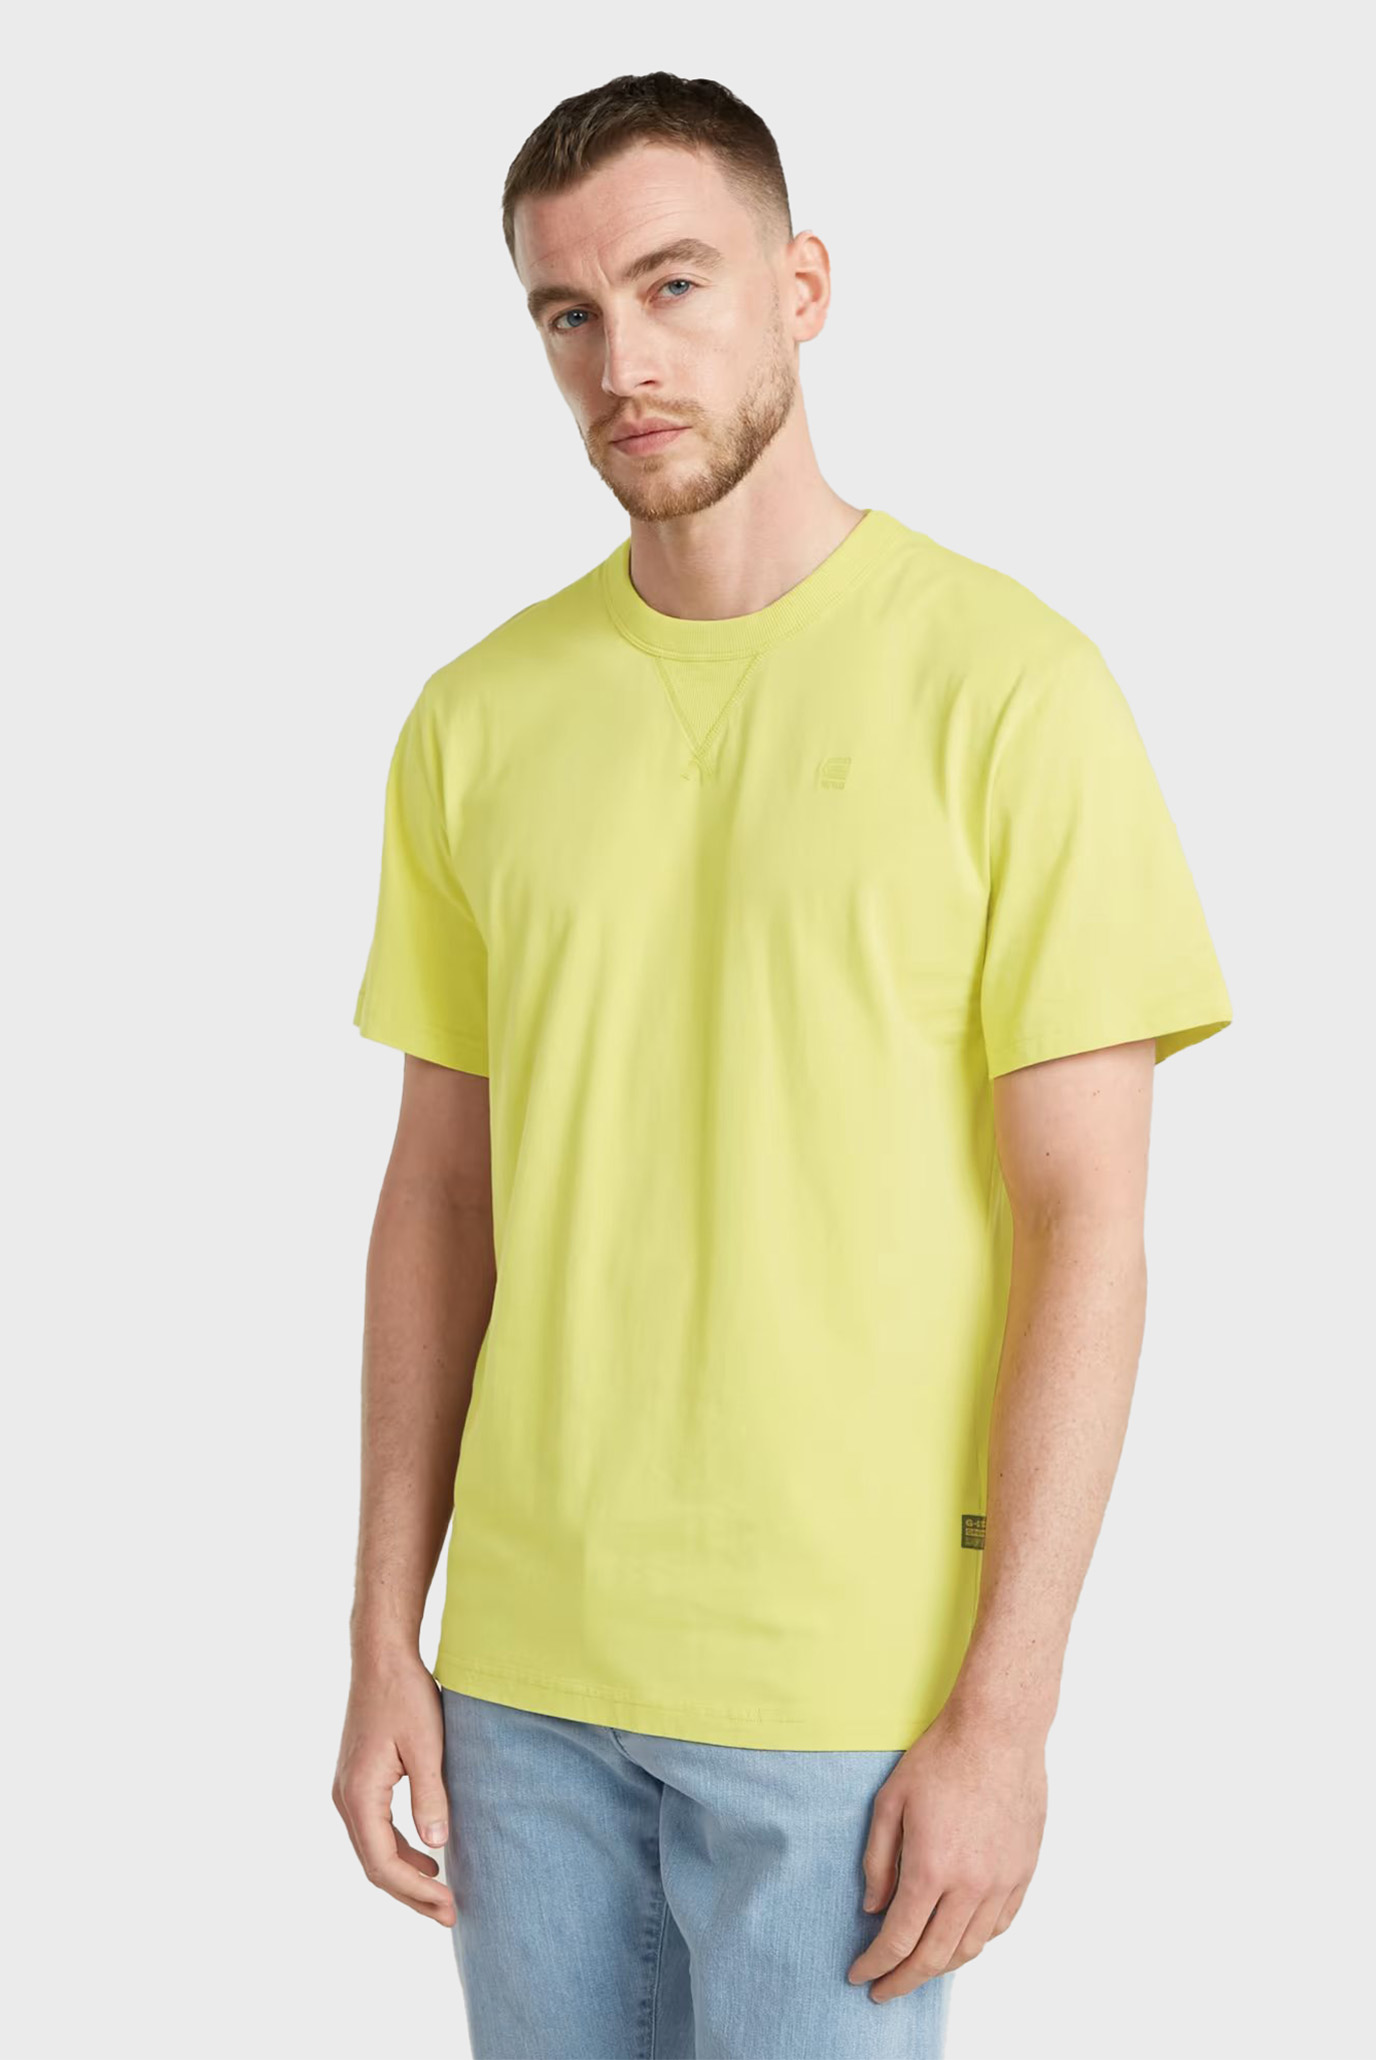 Мужская желтая футболка Nifous r t 1